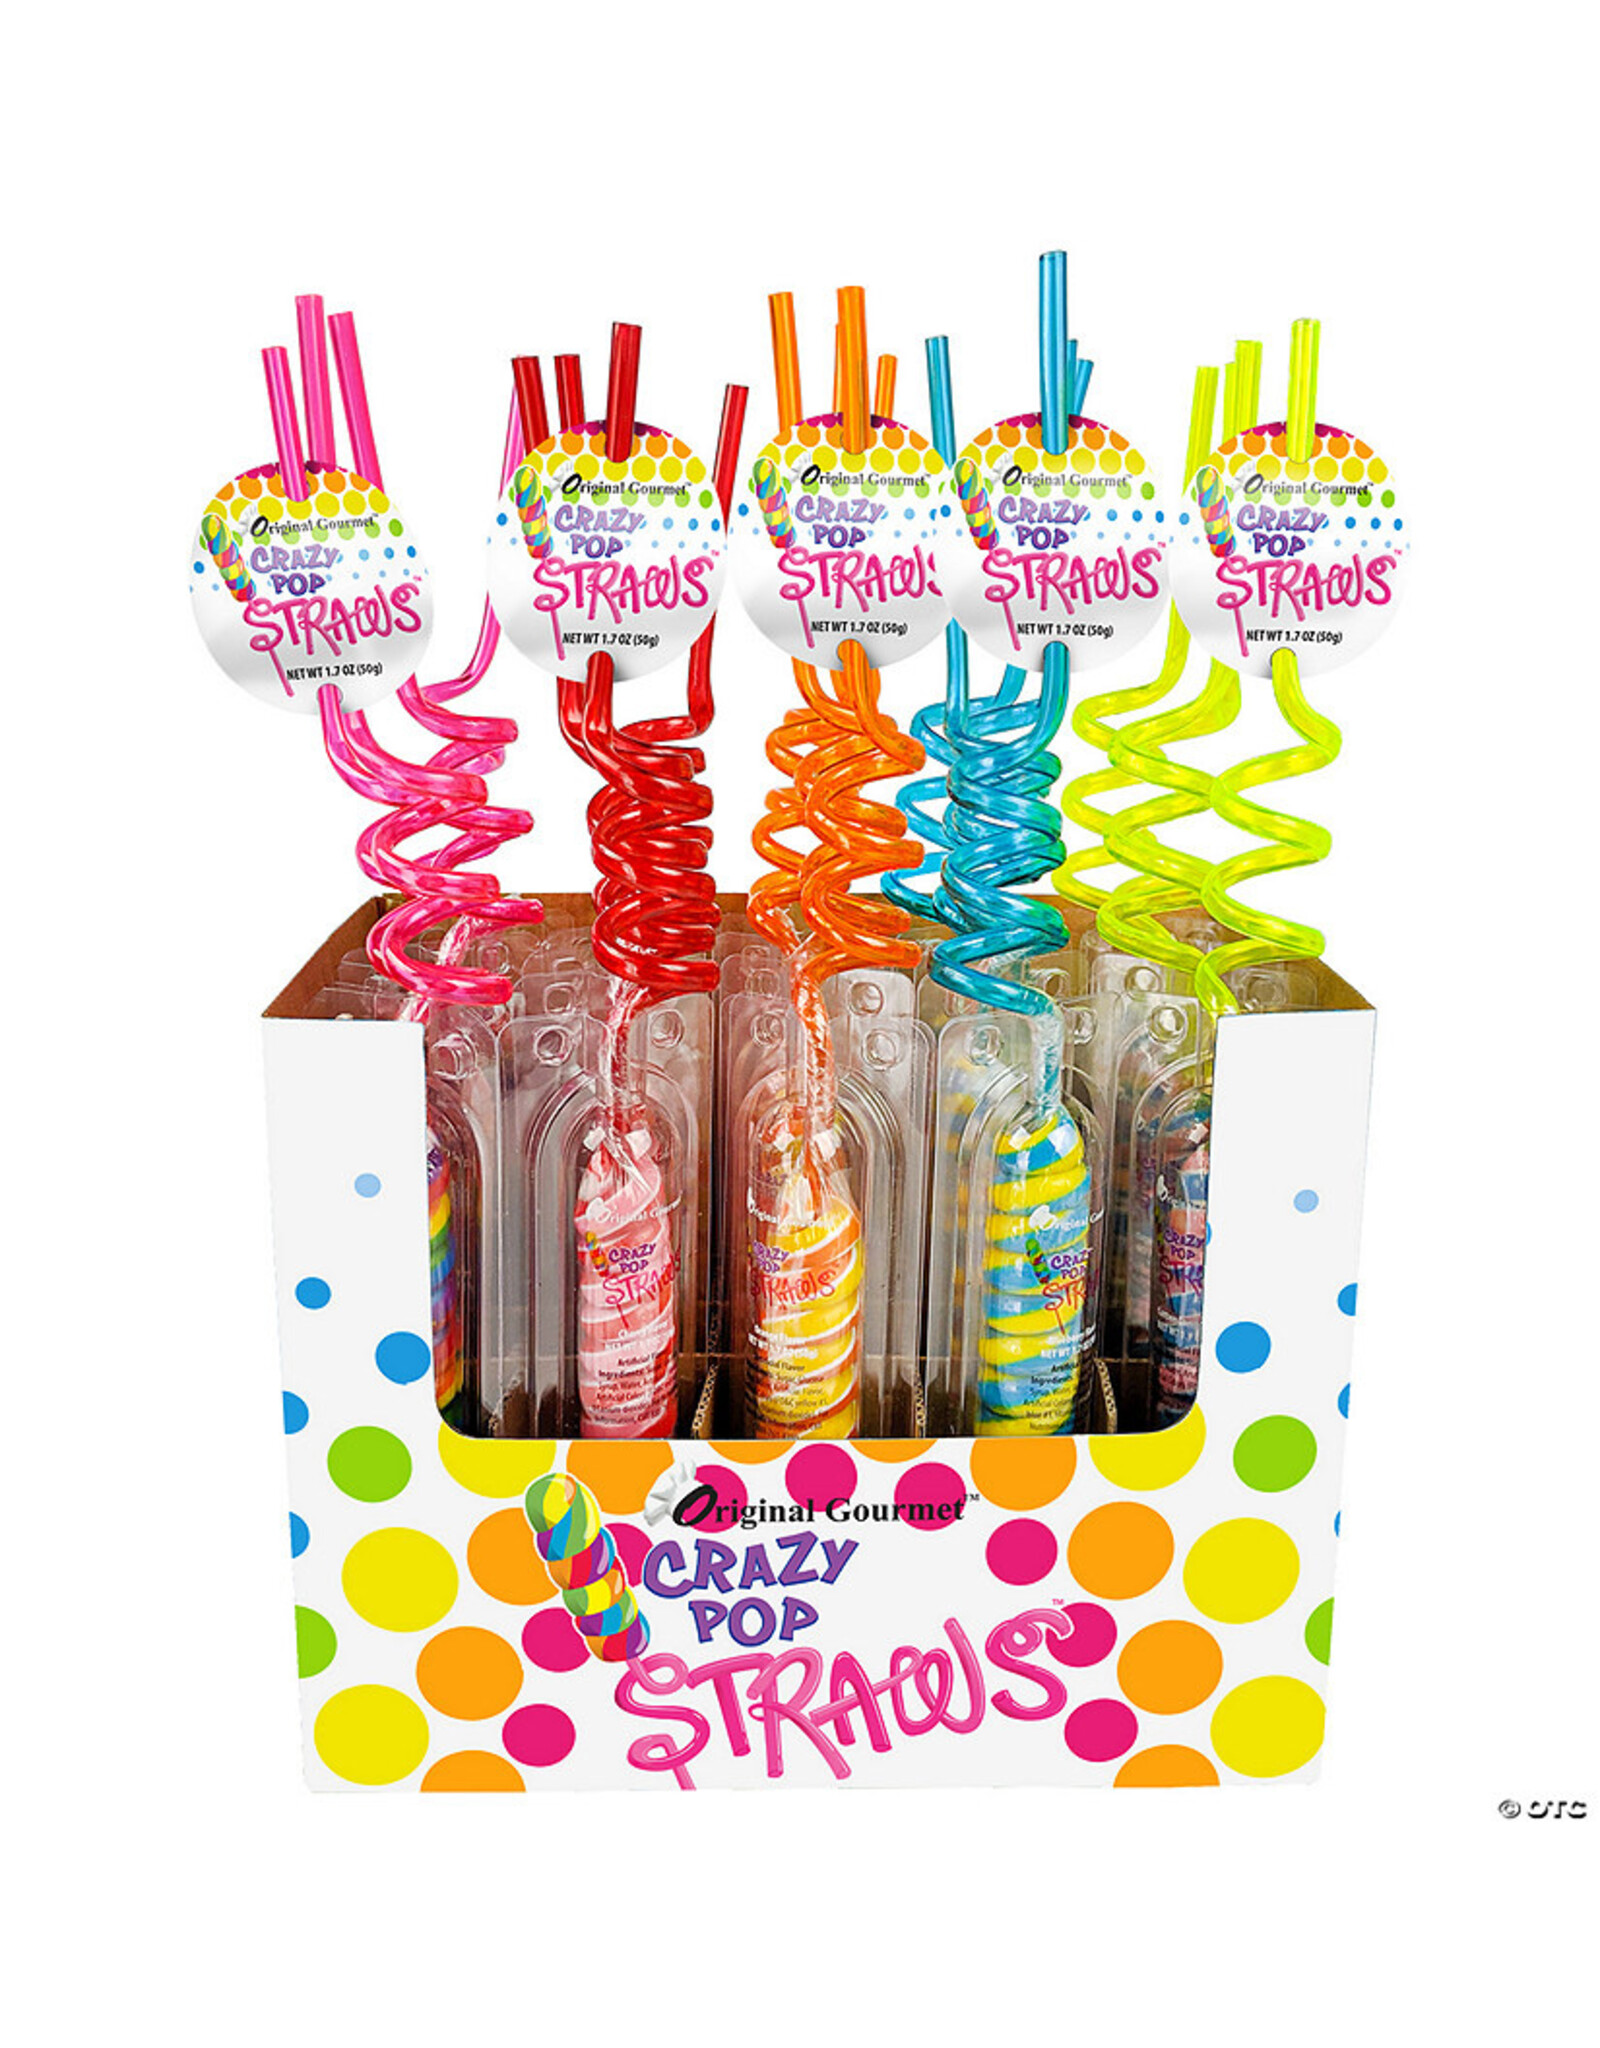 Crazy straw pop